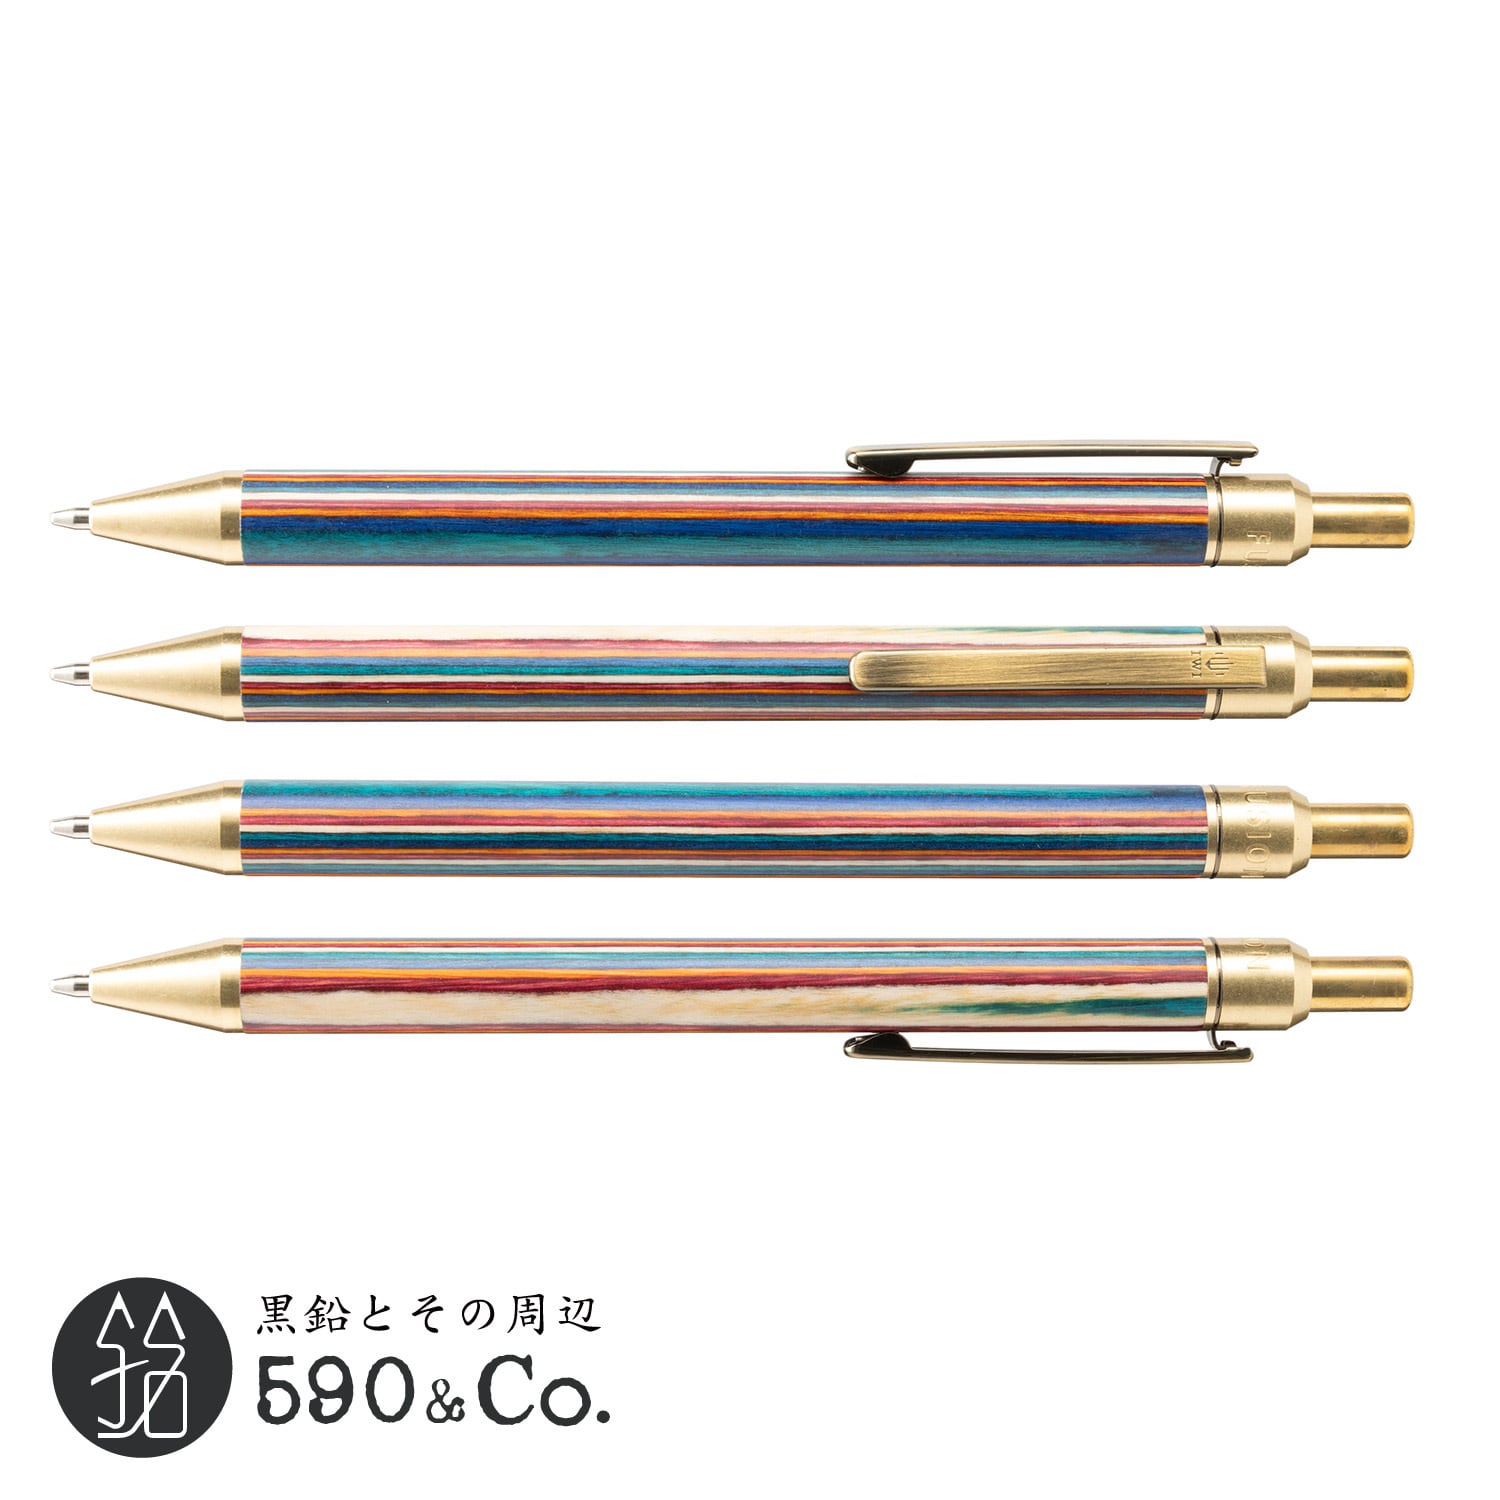 【IWI】Fusion Color Wood メカニカルペンシル(0.5mm/ブラス) 590Co.